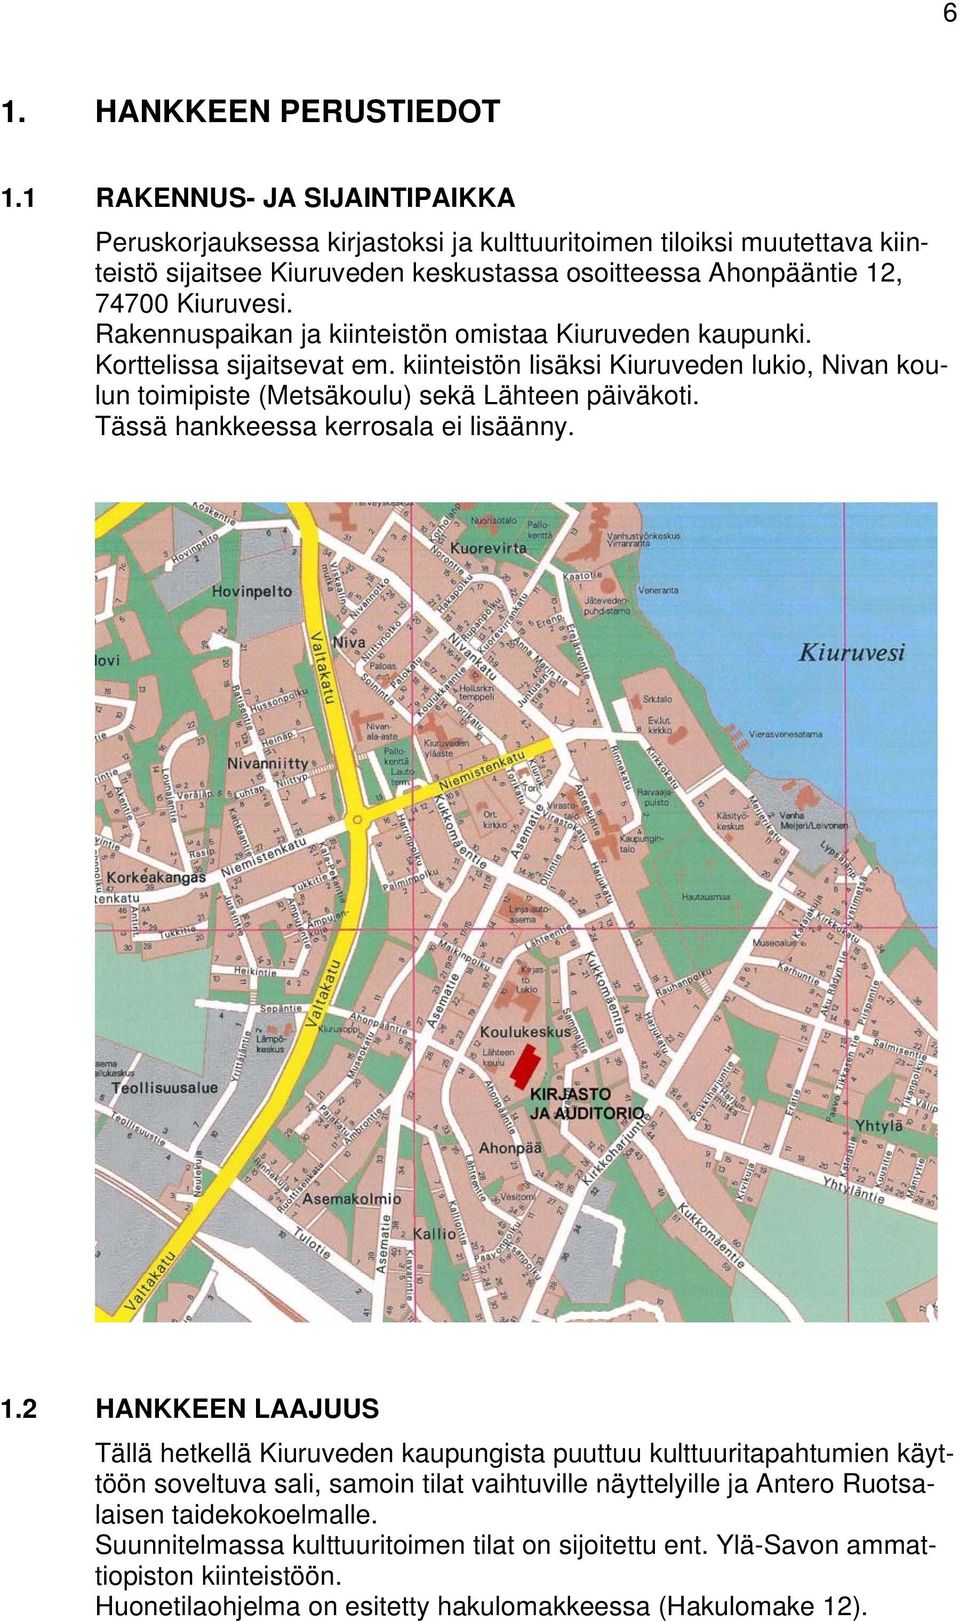 Rakennuspaikan ja kiinteistön omistaa Kiuruveden kaupunki. Korttelissa sijaitsevat em. kiinteistön lisäksi Kiuruveden lukio, Nivan koulun toimipiste (Metsäkoulu) sekä Lähteen päiväkoti.